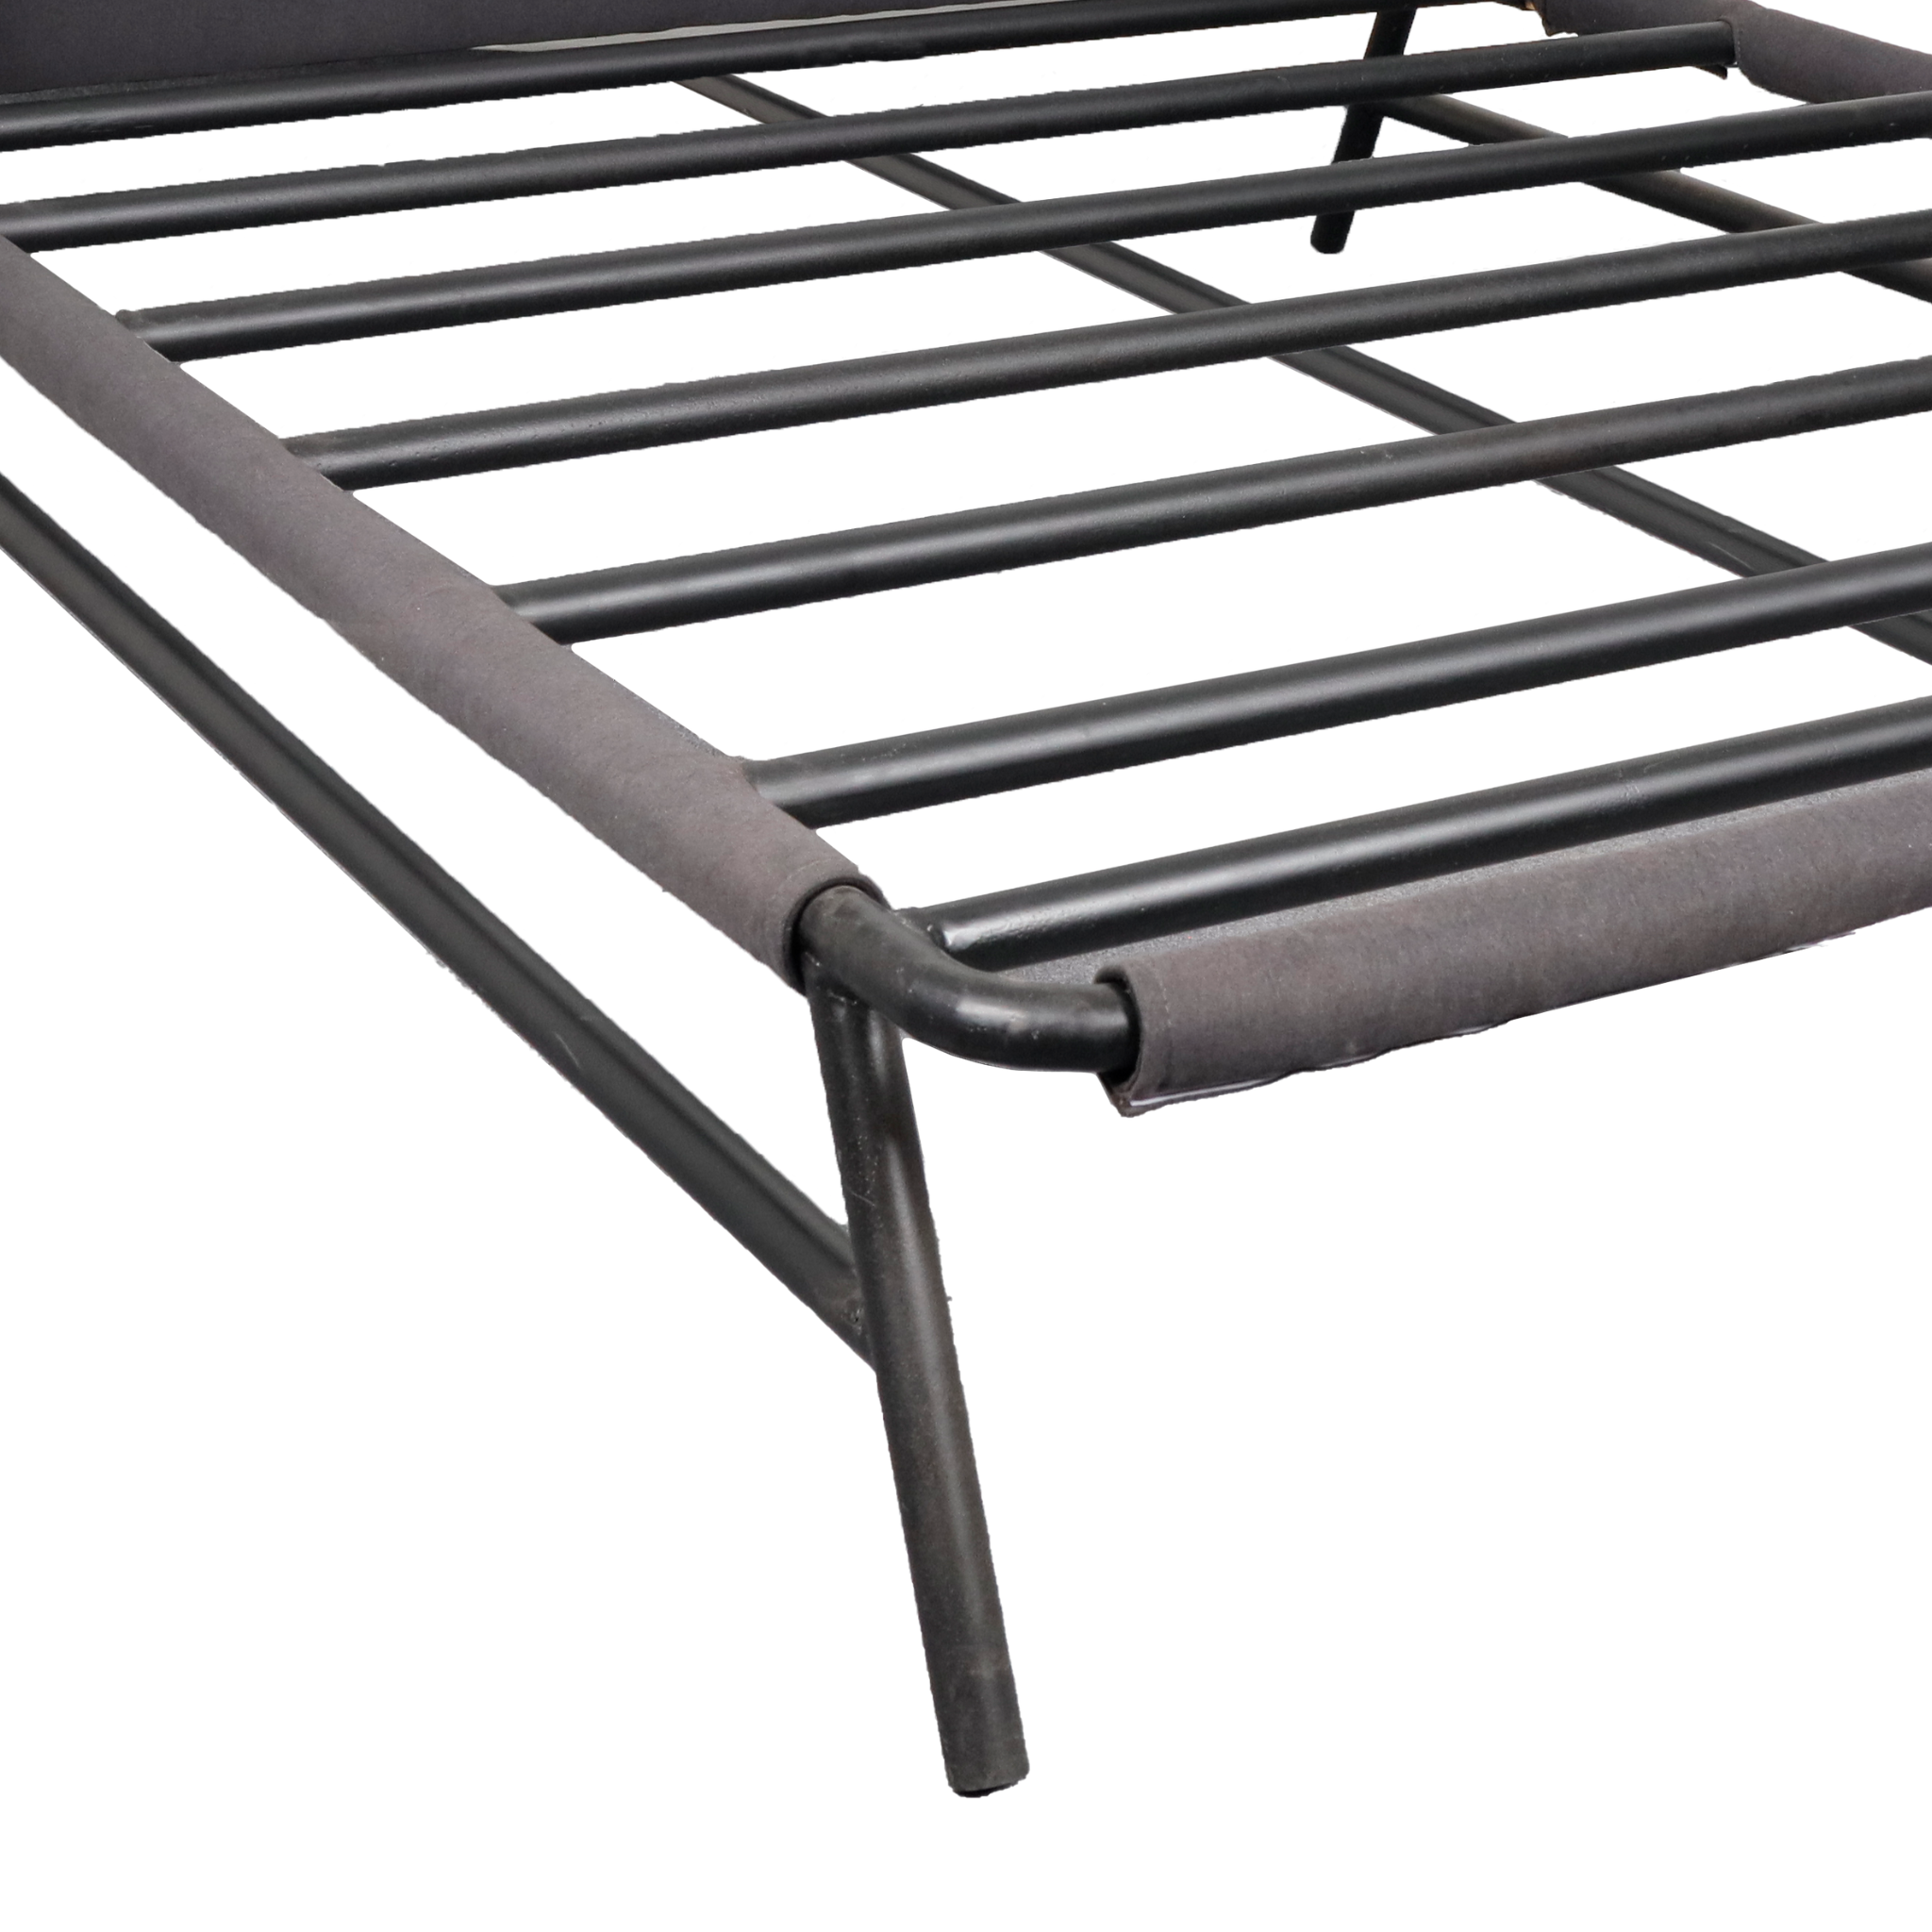 HENZEL Metal Bed Frame w/ Upholstered Head Board AF Home